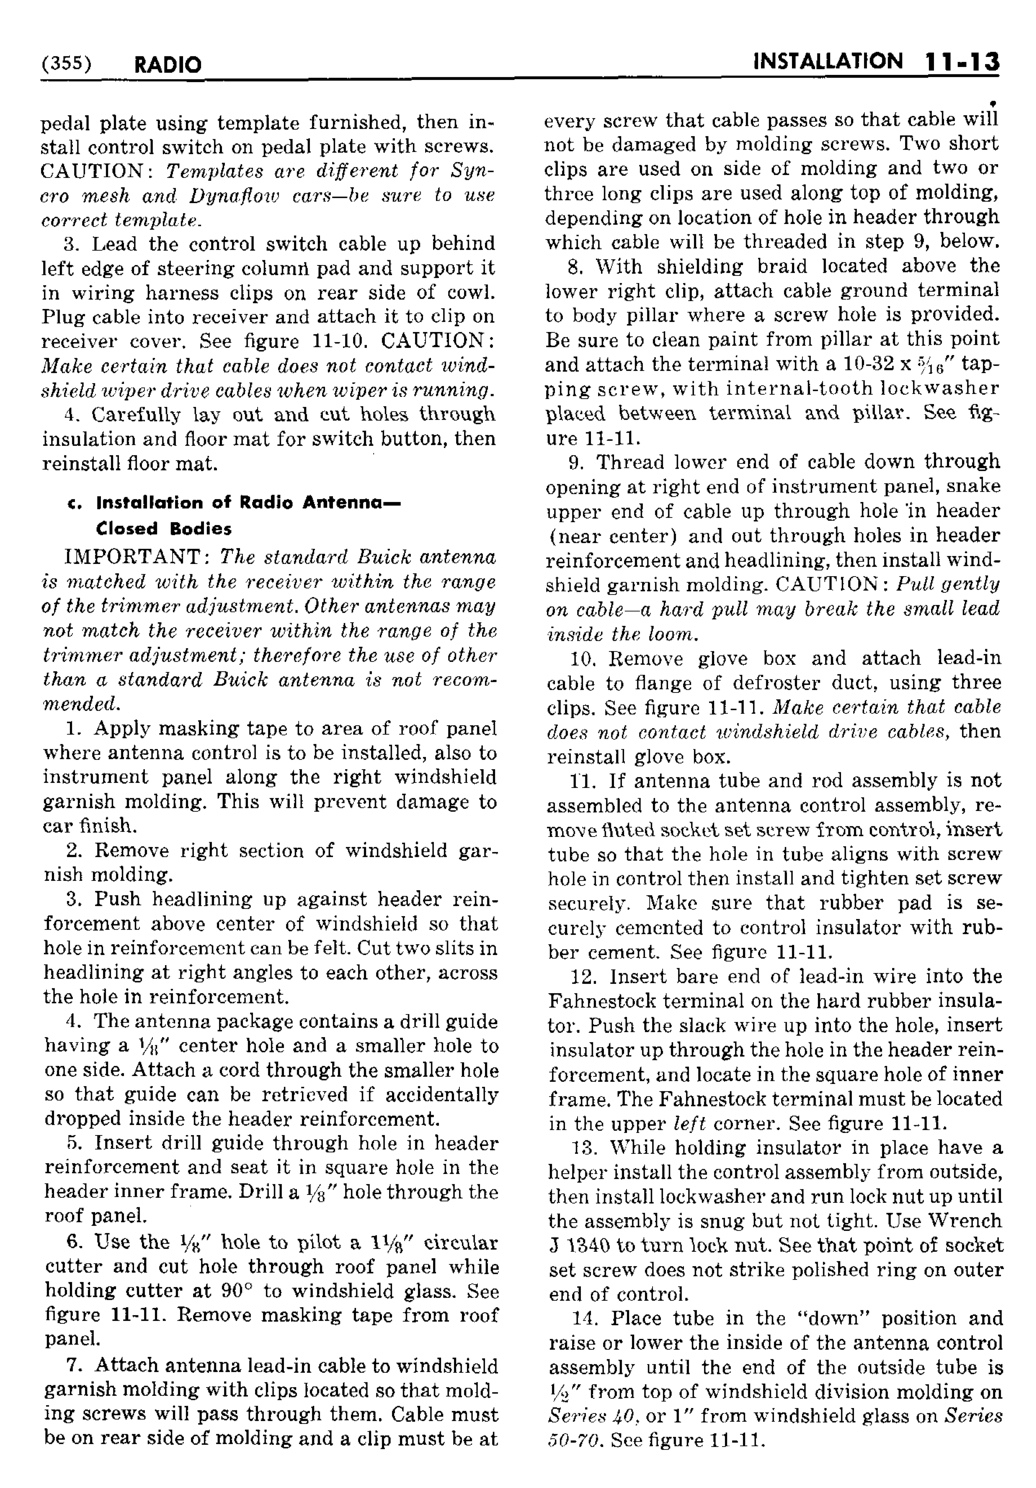 n_12 1950 Buick Shop Manual - Accessories-013-013.jpg